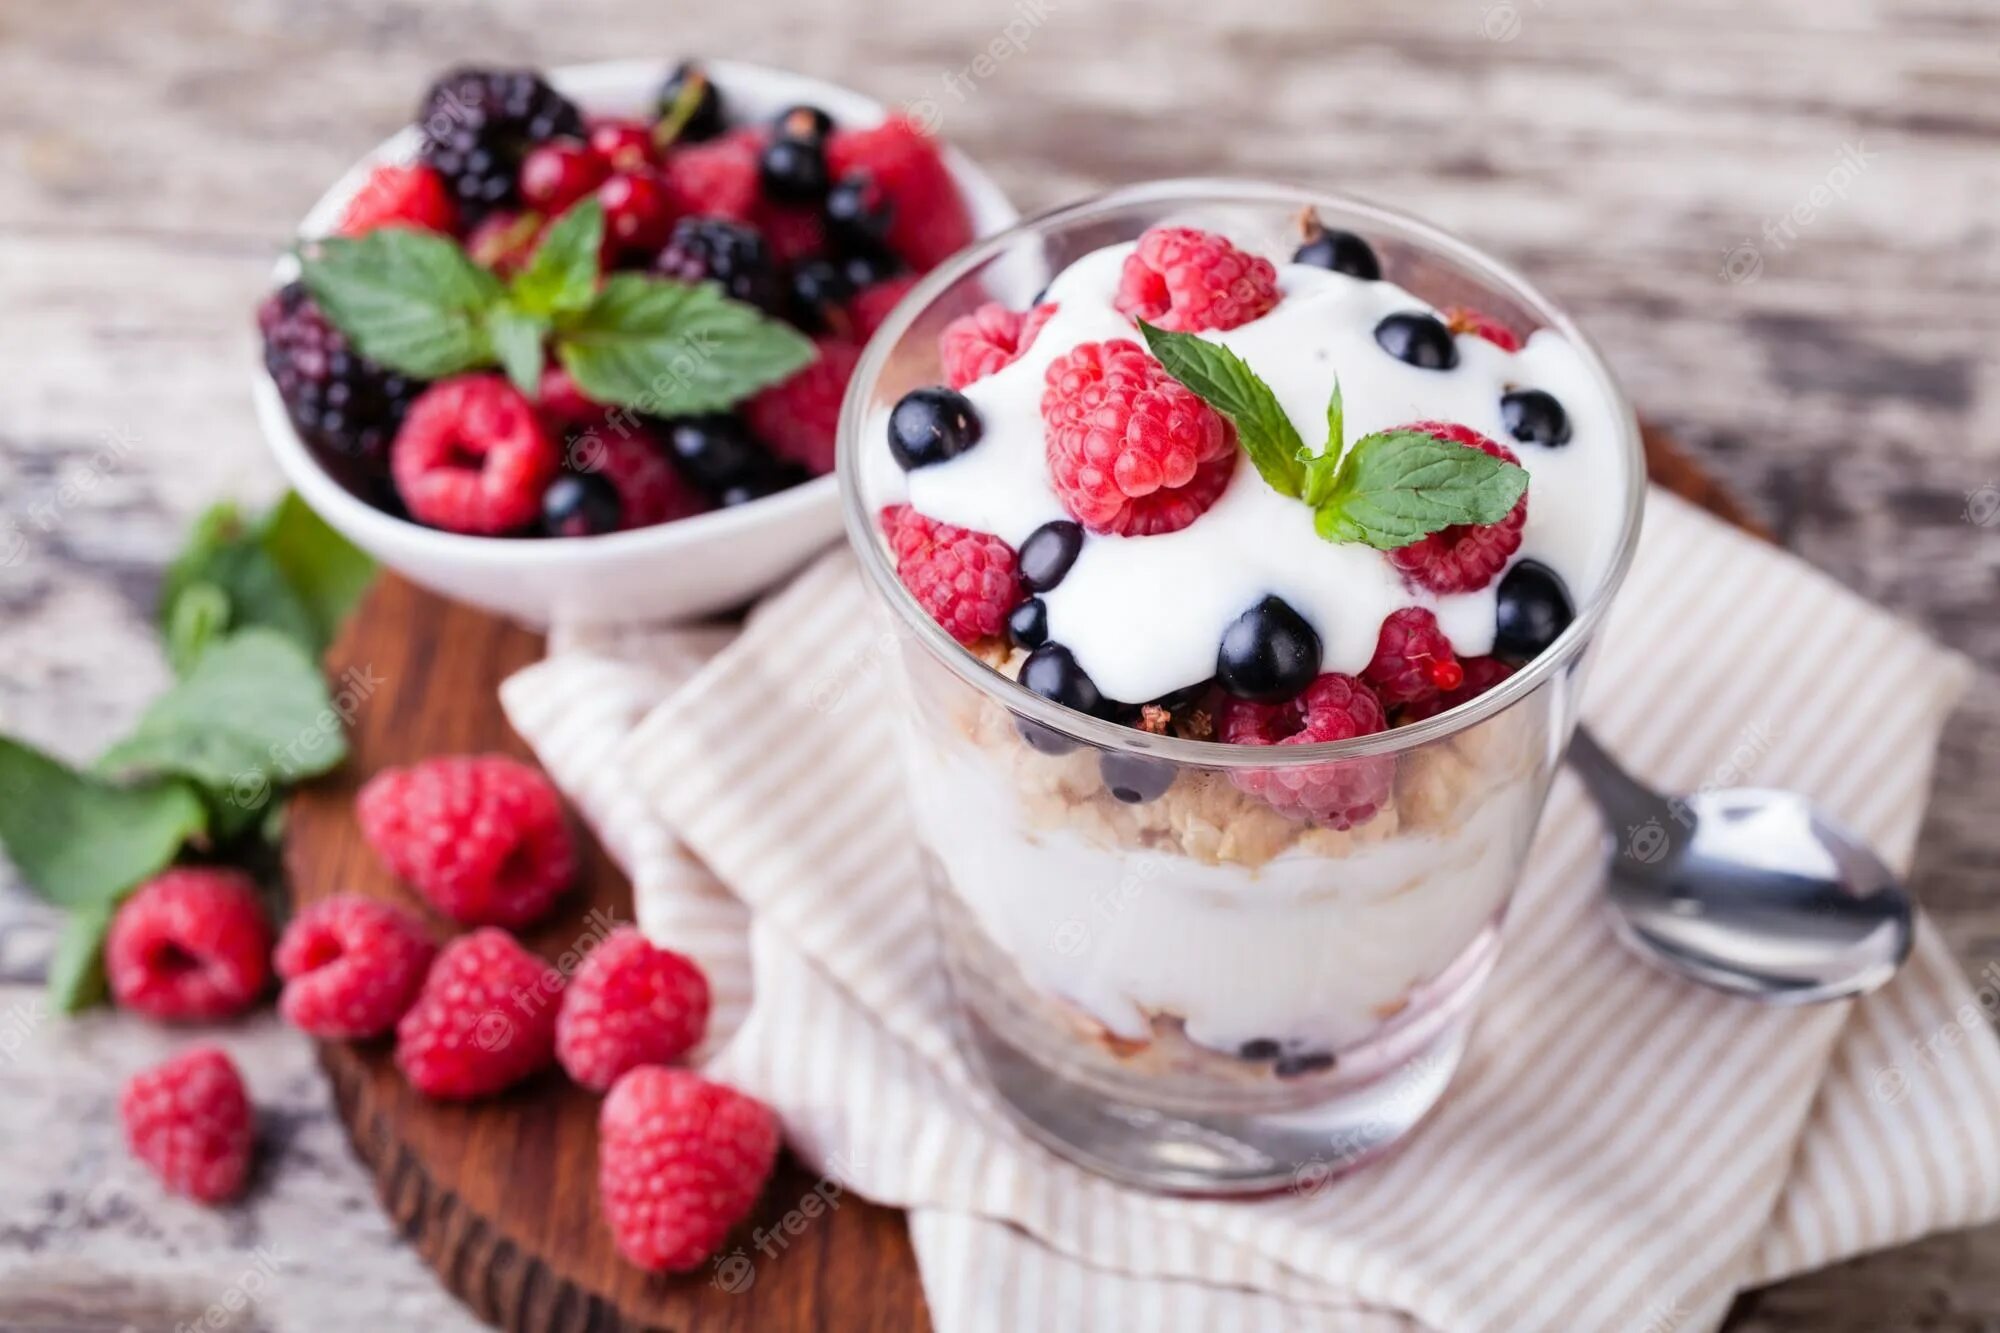 Фото йогурта. Йогурт. Йогуртовые Десерты. Ягодный десерт. Йогурт с ягодами.